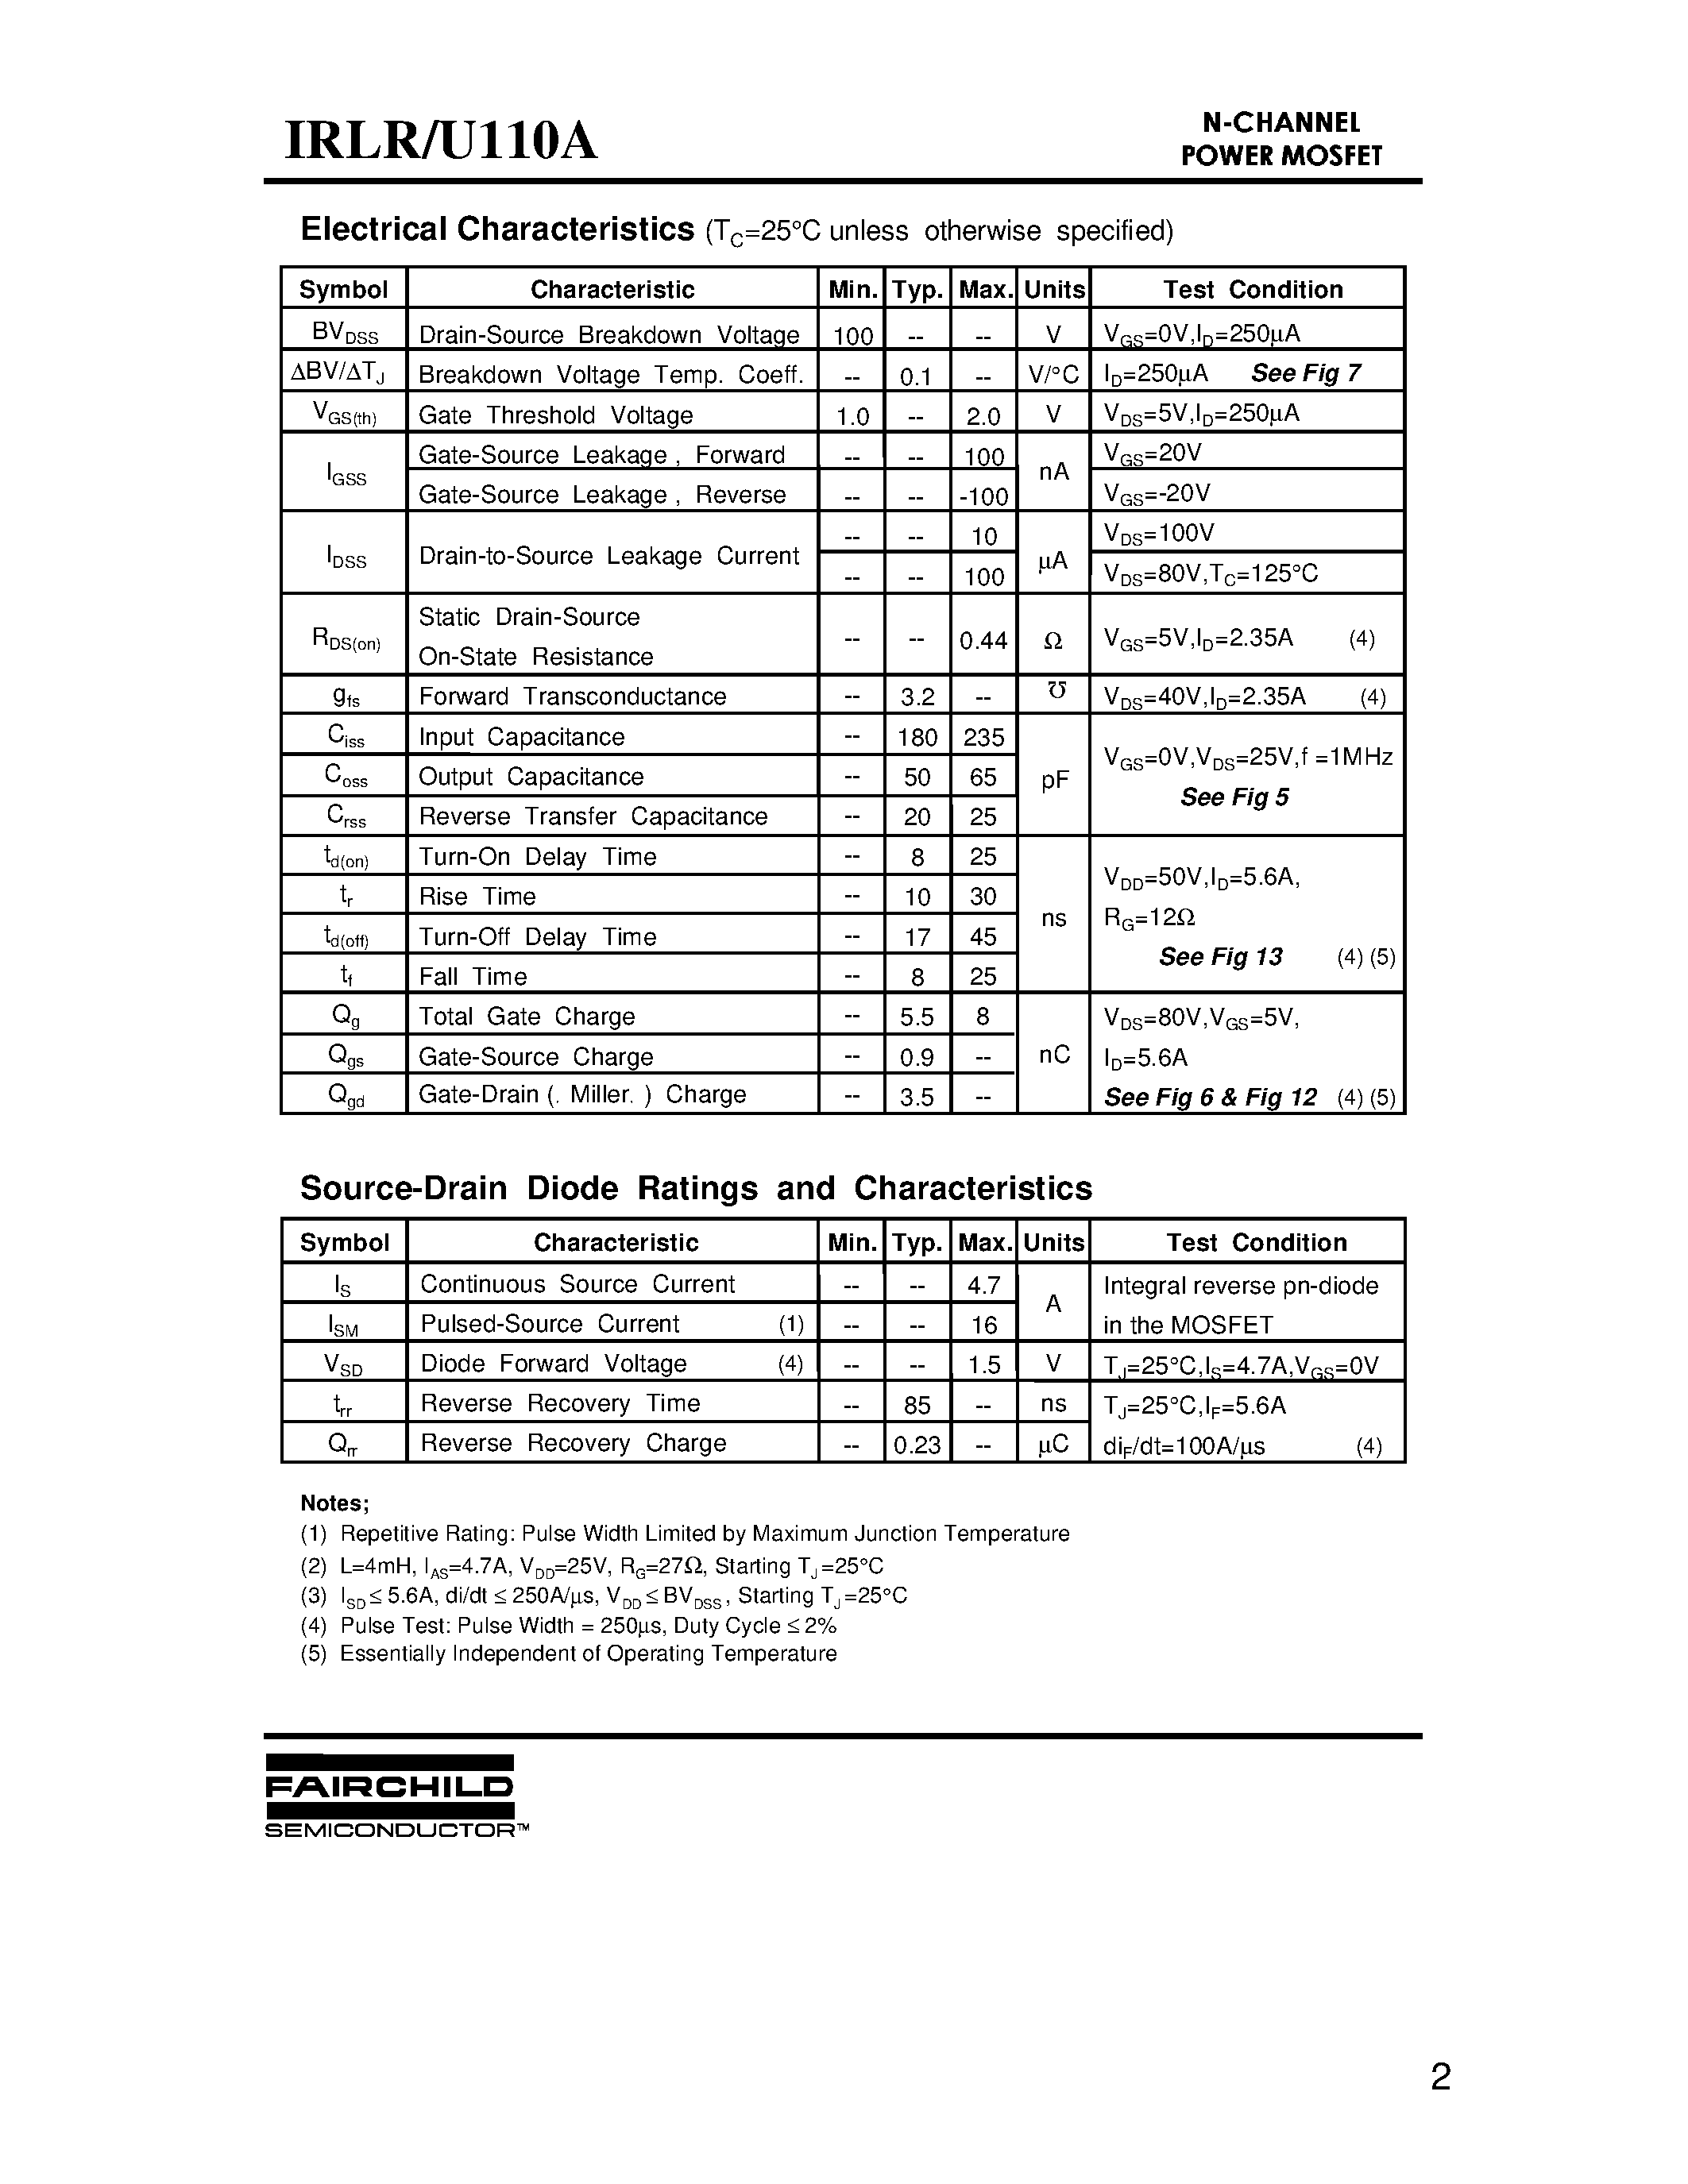 Datasheet IRLR110A - (IRLR110A / IRLU110A) Advanced Power MOSFET page 2